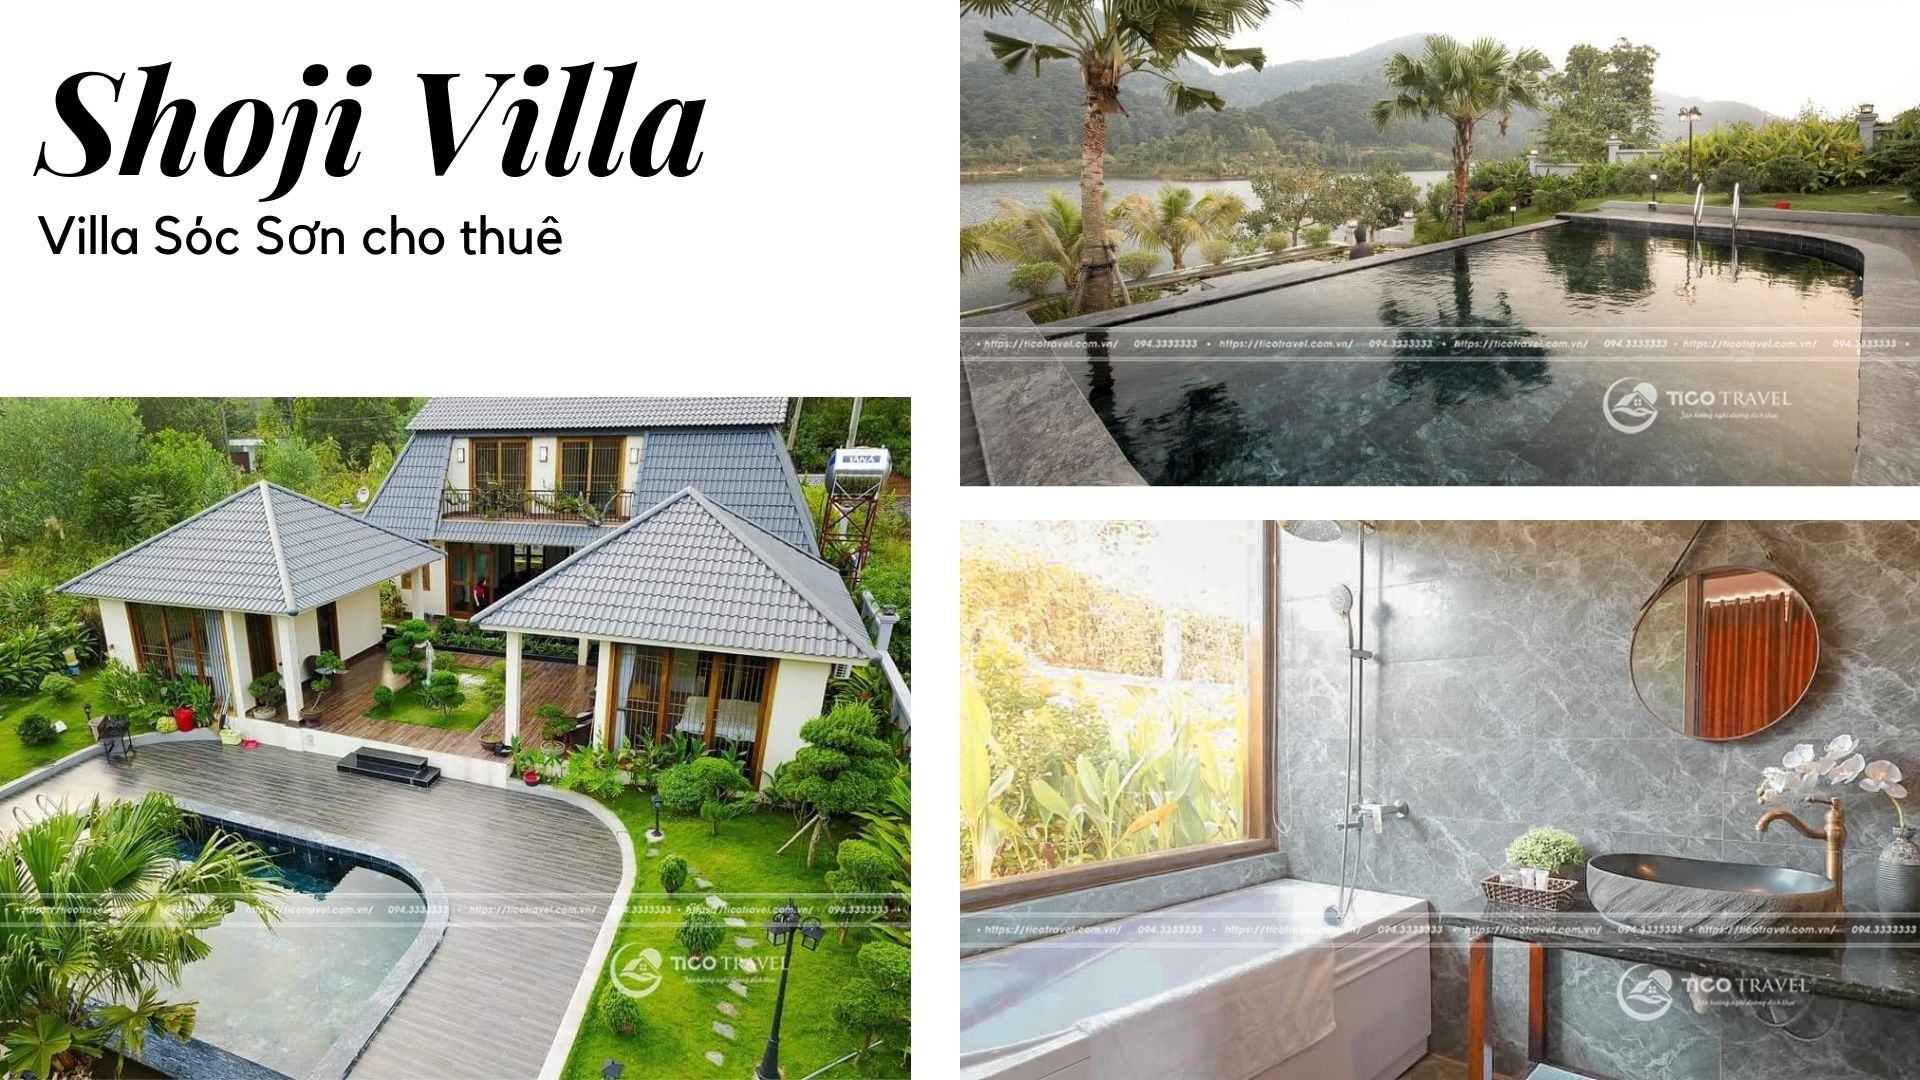 Shoji Villa - Villa Sóc Sơn phong cách Nhật Bản cực chất bên hồ Đồng Đò